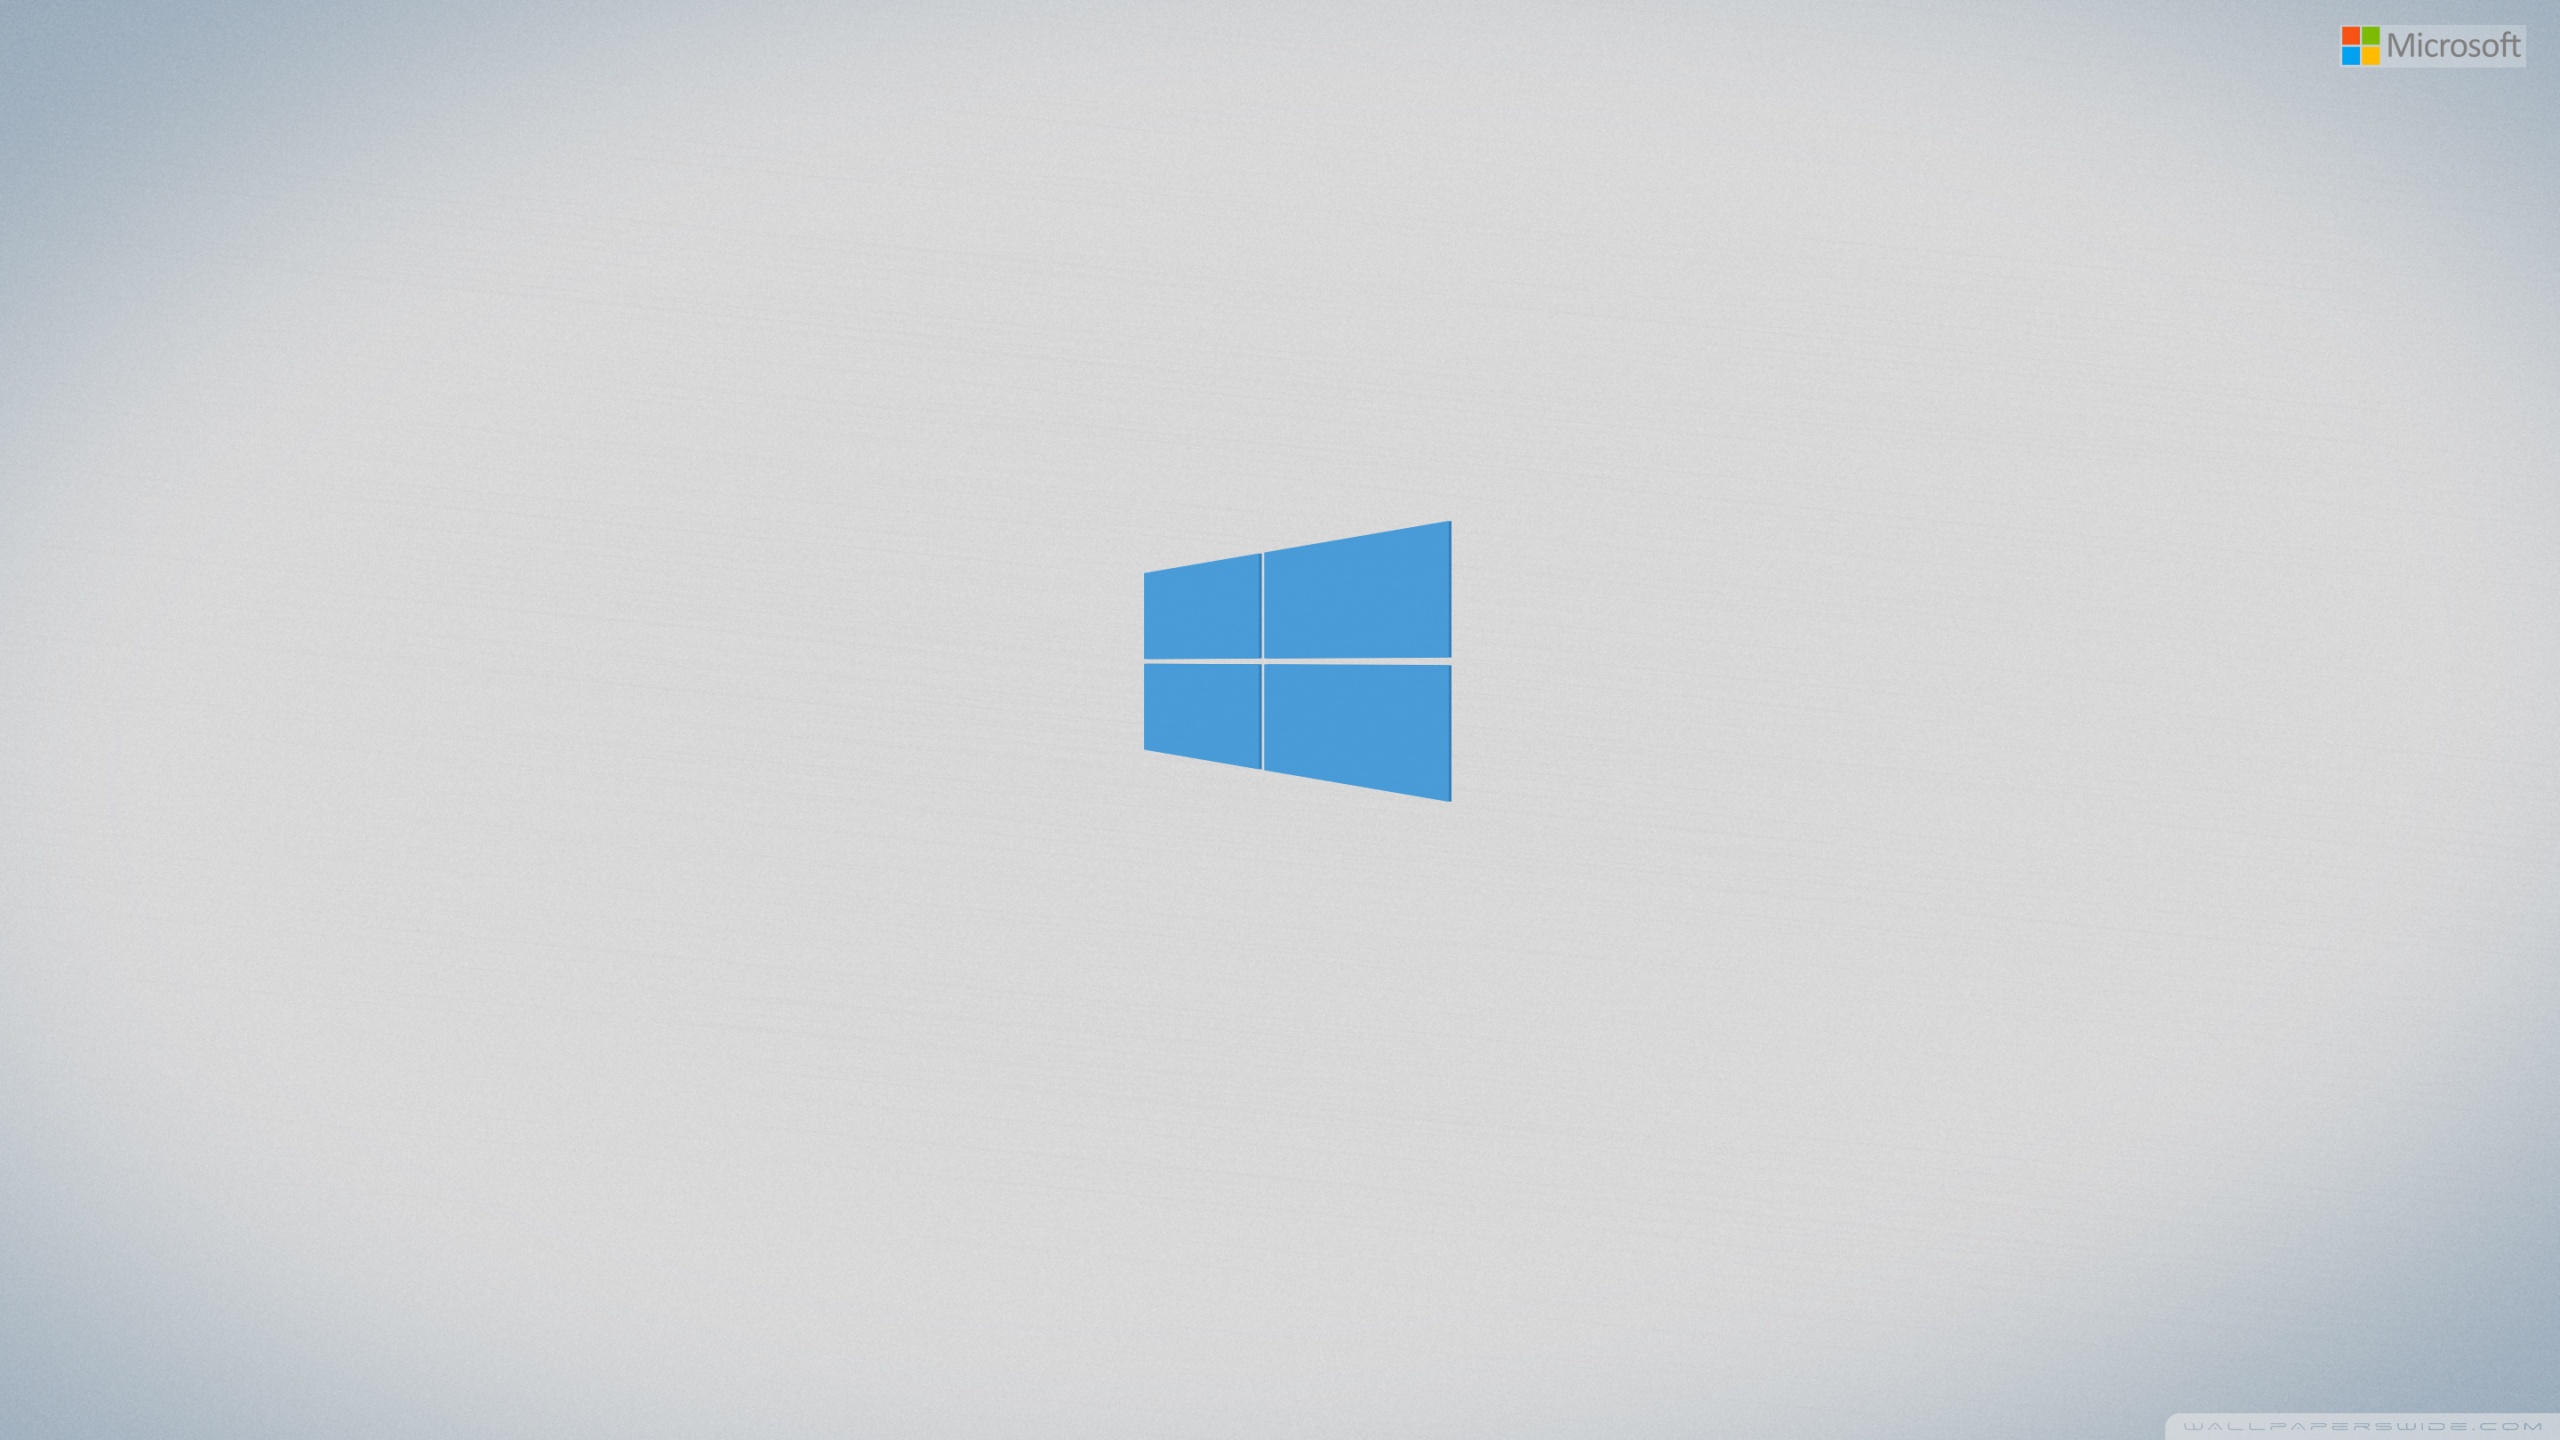 Free download Windows 8 minimal theme blue wallpapers and images: Tải ngay bộ ảnh nền Windows 8 màu xanh đơn giản và tối giản để làm mới giao diện máy tính của bạn. Tạo cảm giác mới lạ và dễ chịu với hình nền sáng tạo này. Click ngay để tải về!